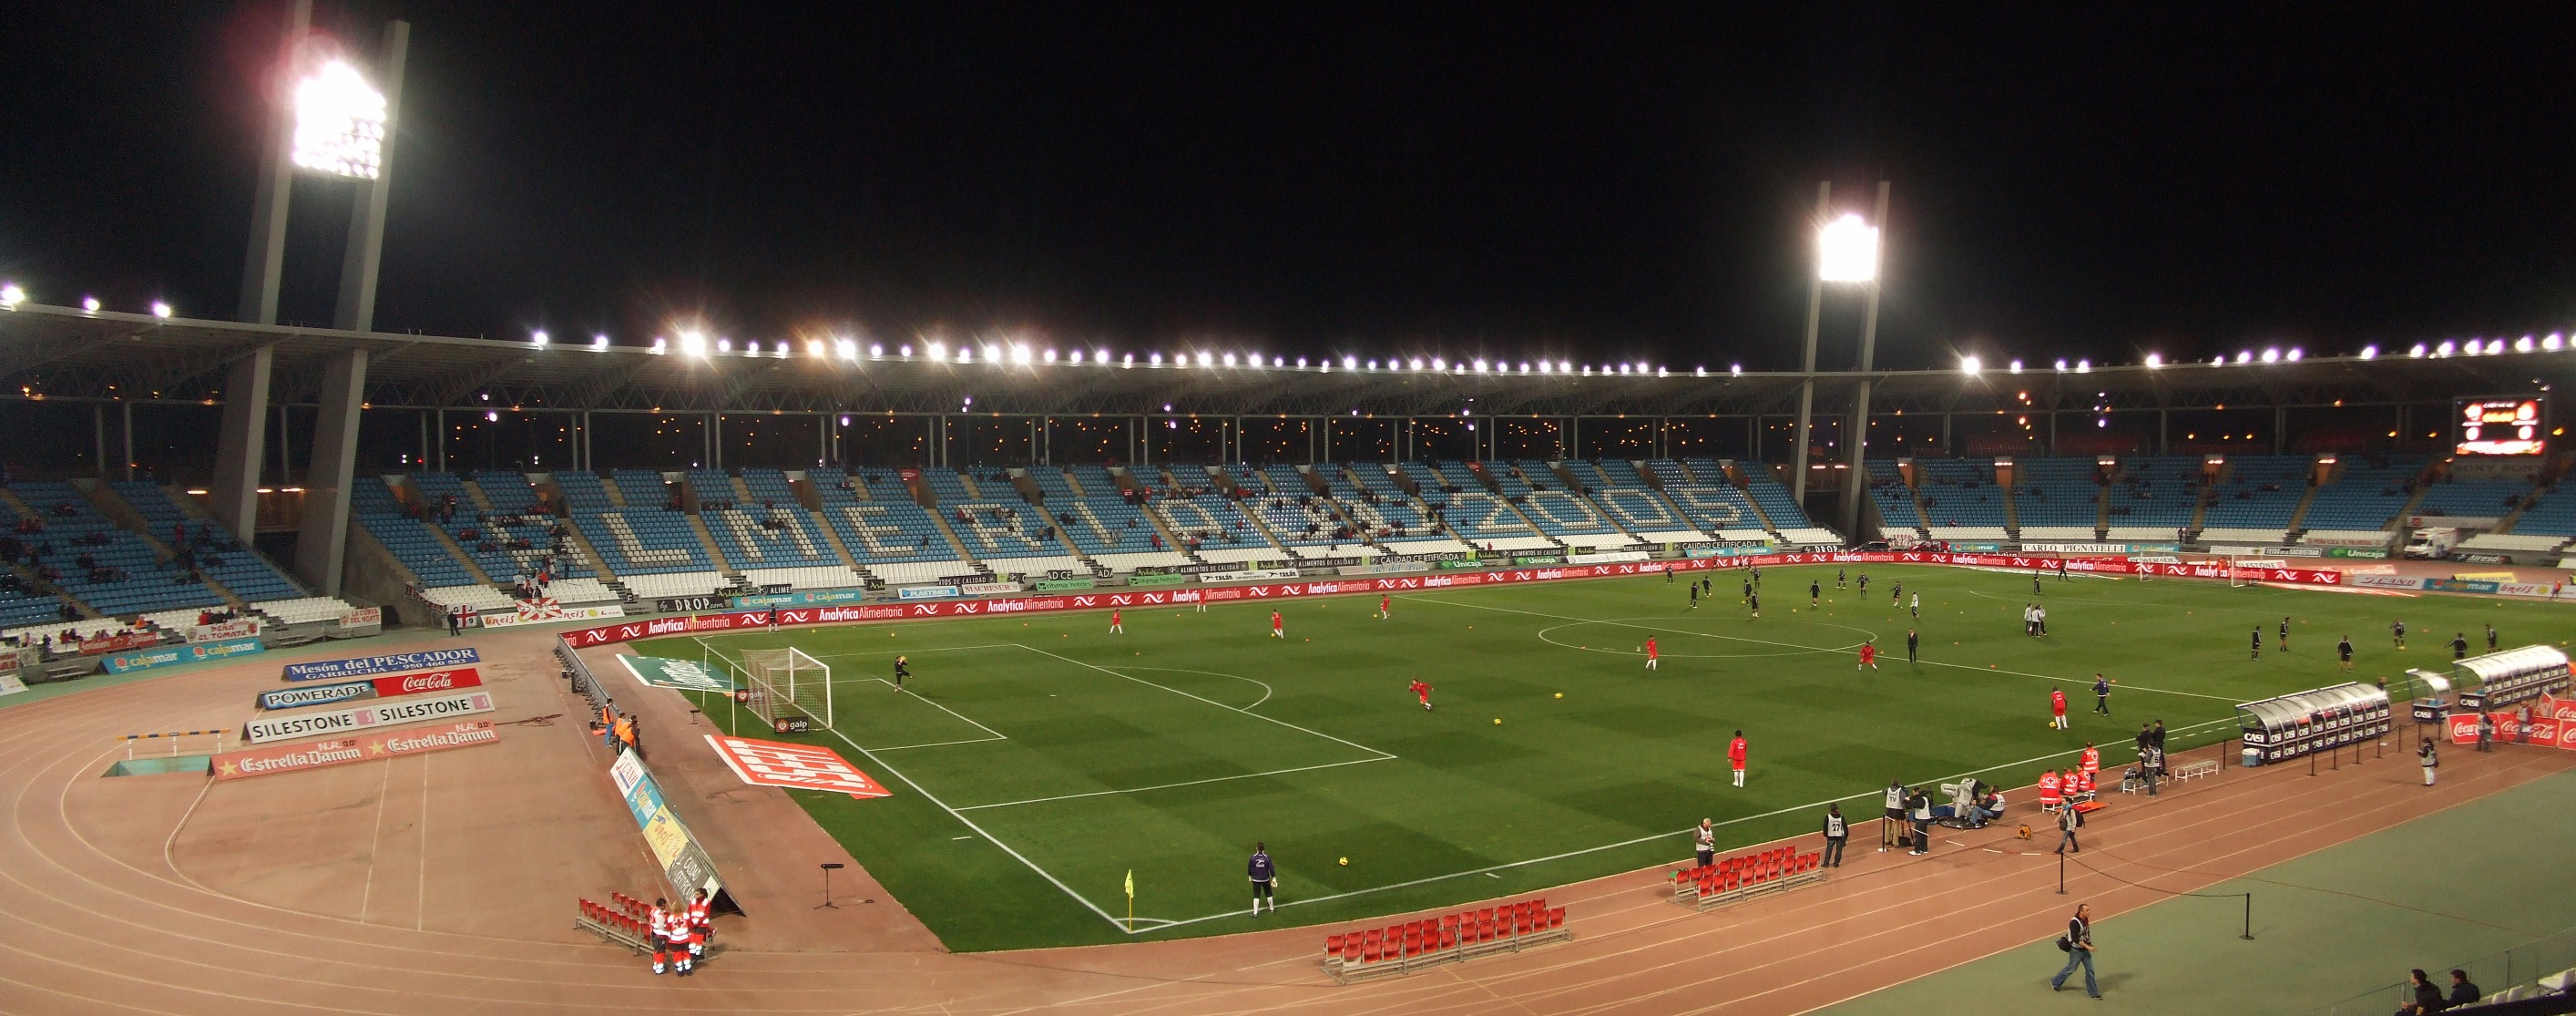 Estadio Municipal Juegos del Mediterráneo